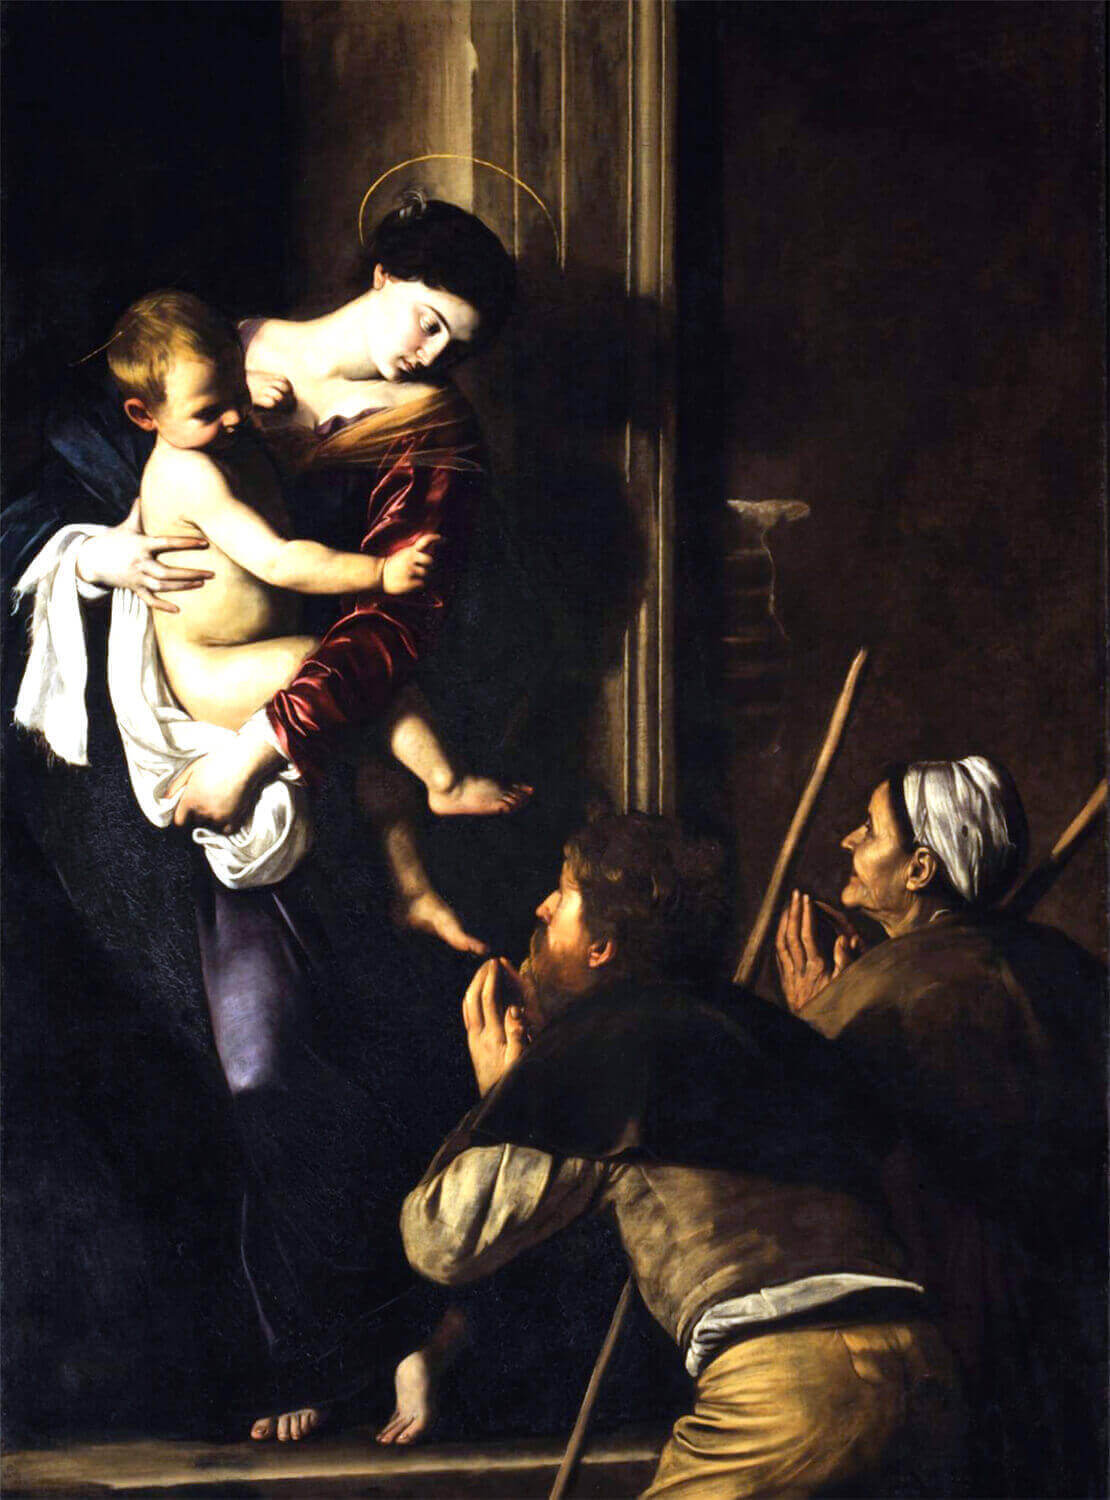 Картина Караваджо "Санта Мария и пелегрини или санта Мария Лорето" в церкви Сан Агостино в Риме.